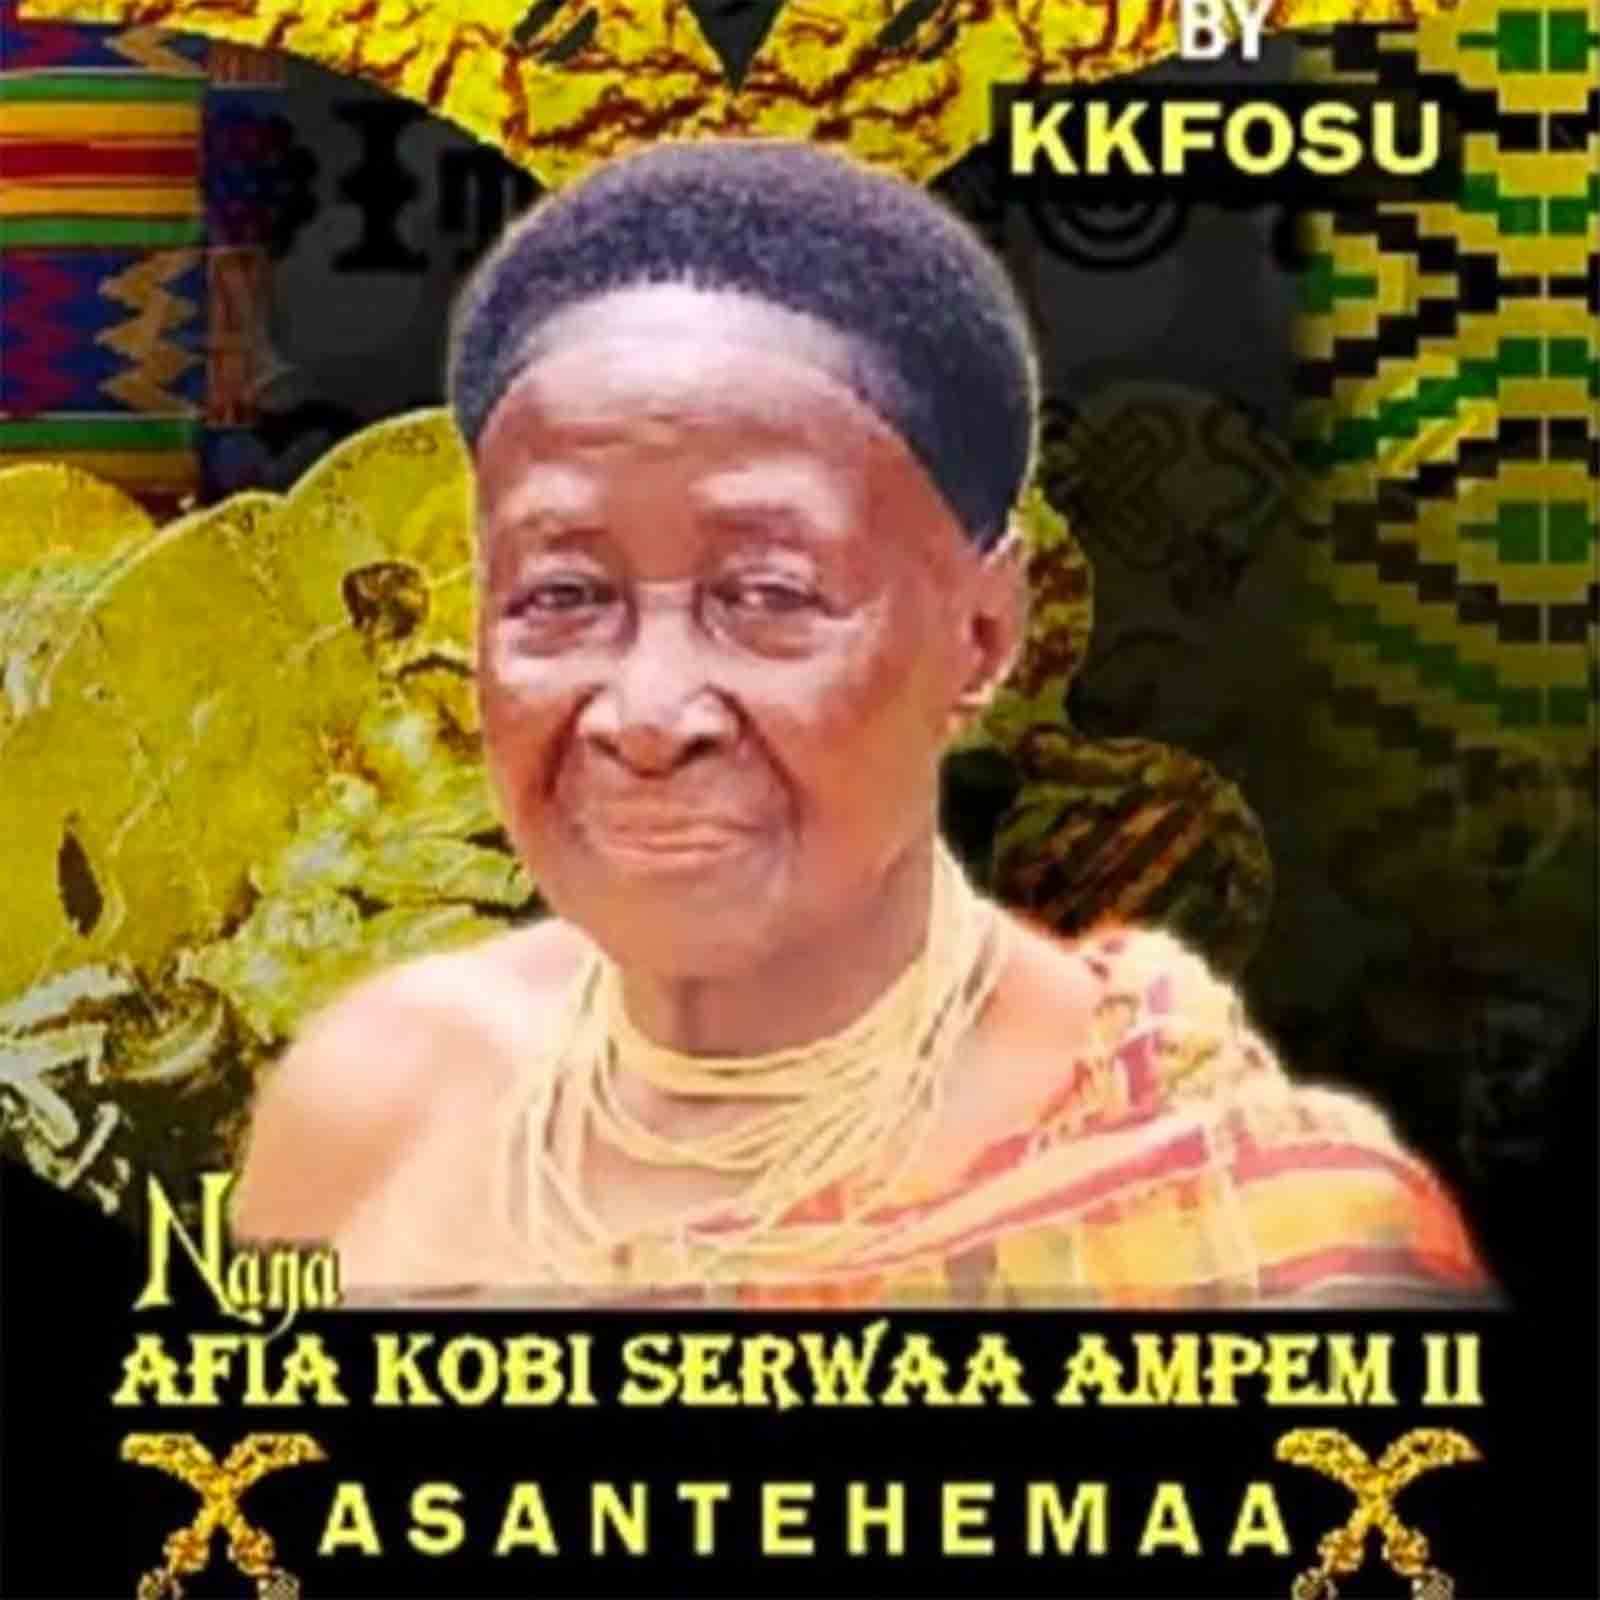 Tribute To Nana Afia Kobi Serwaa Ampem II by K. K. Fosu